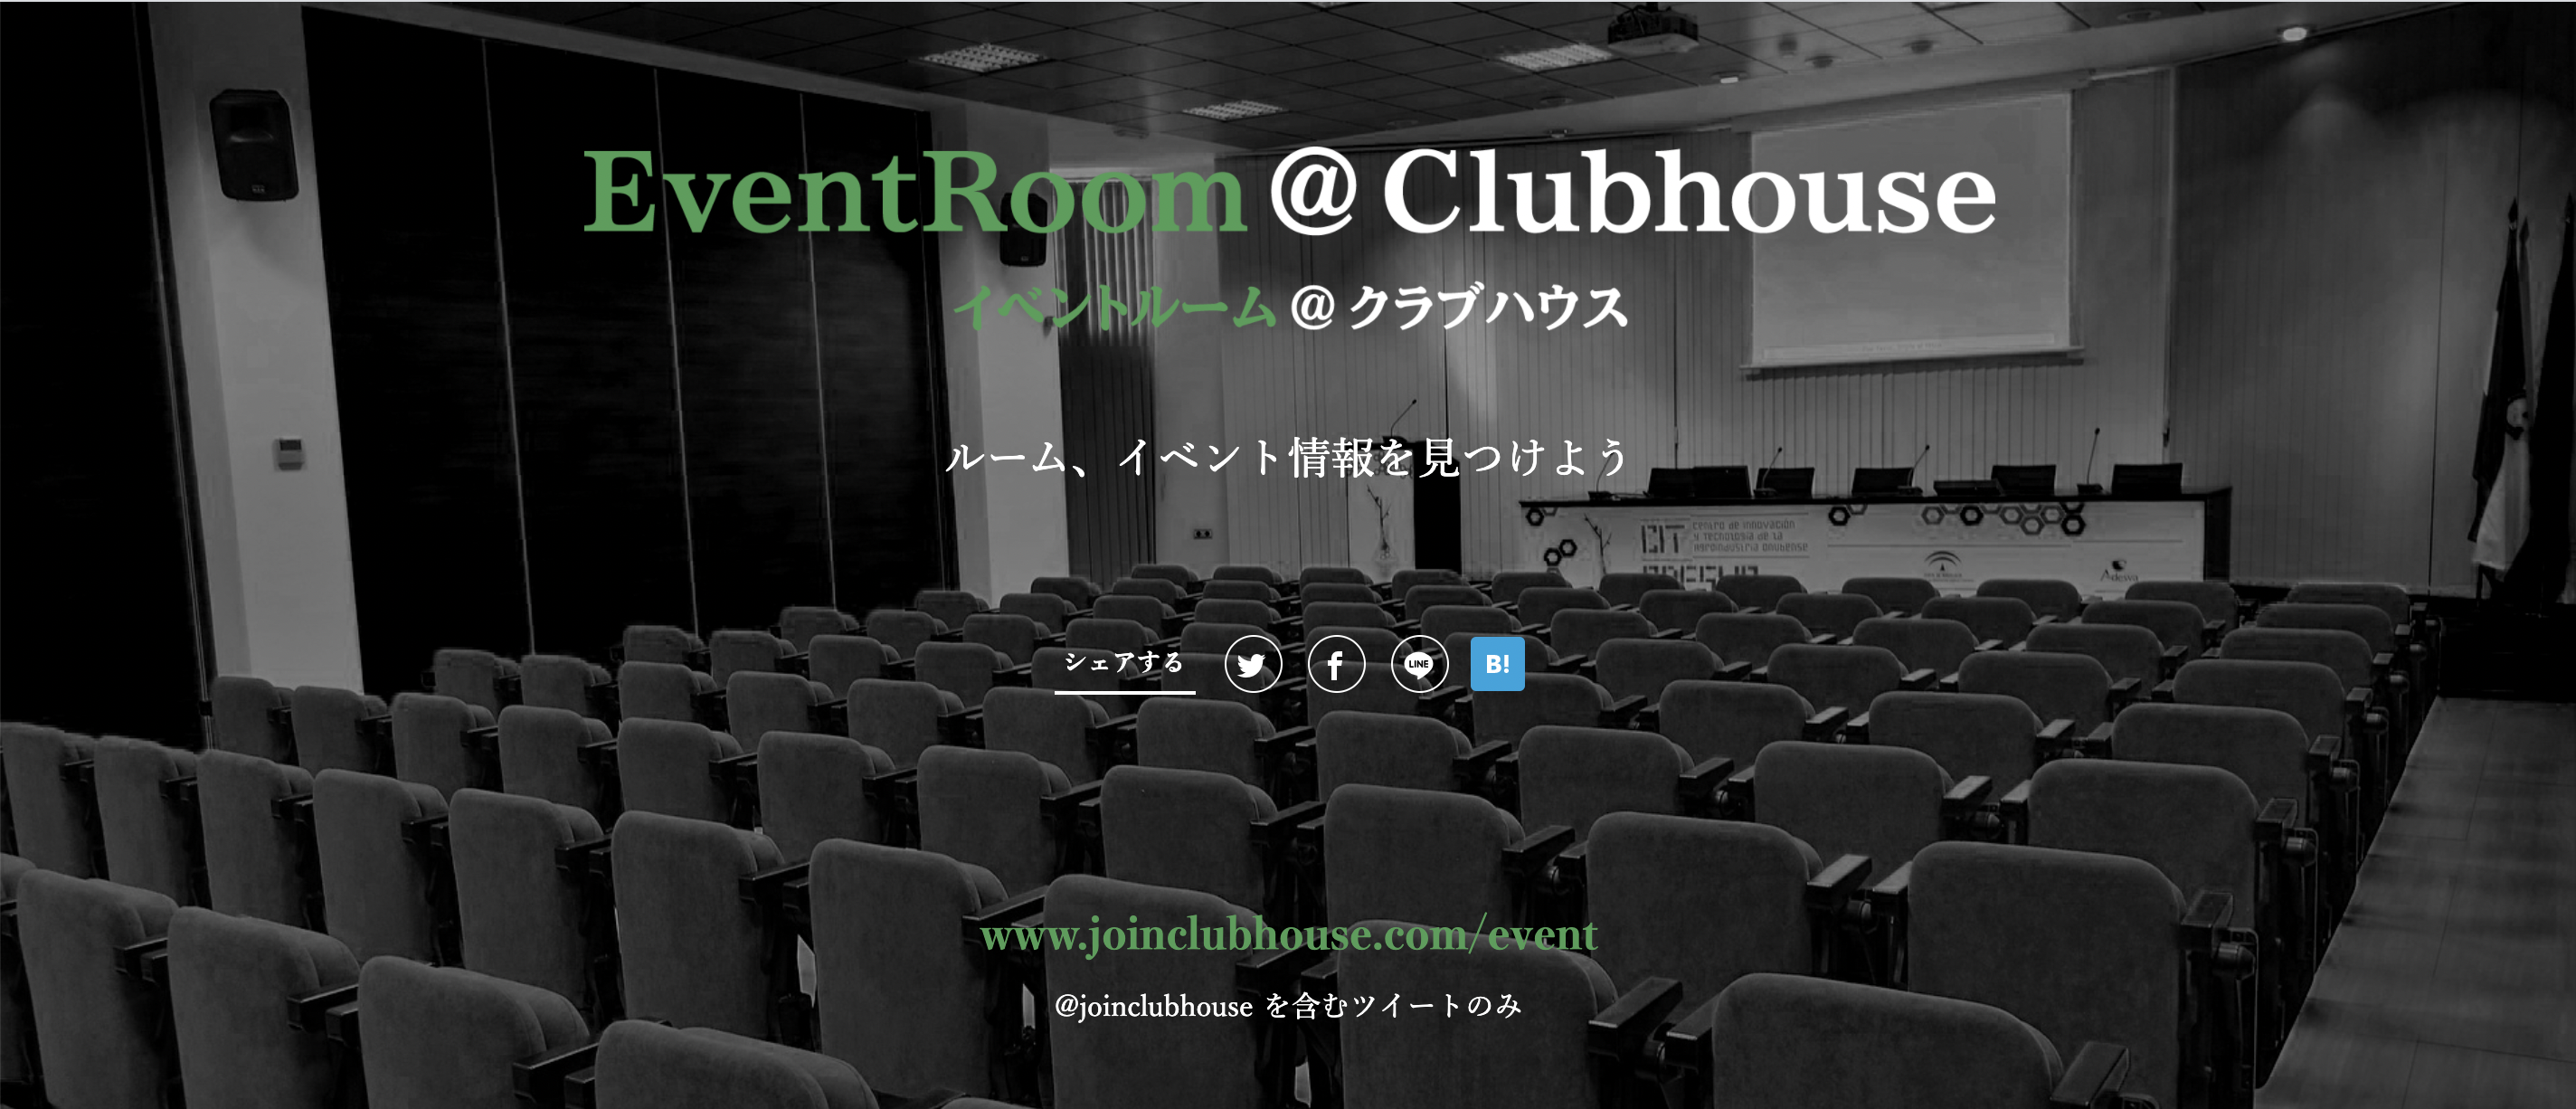 ～『EventRoom@Clubhouse』は、TwitterにシェアされたClubhouseのルームやイベン ト情報を弊社のタグライブで取得し、ページに集約するサービスです